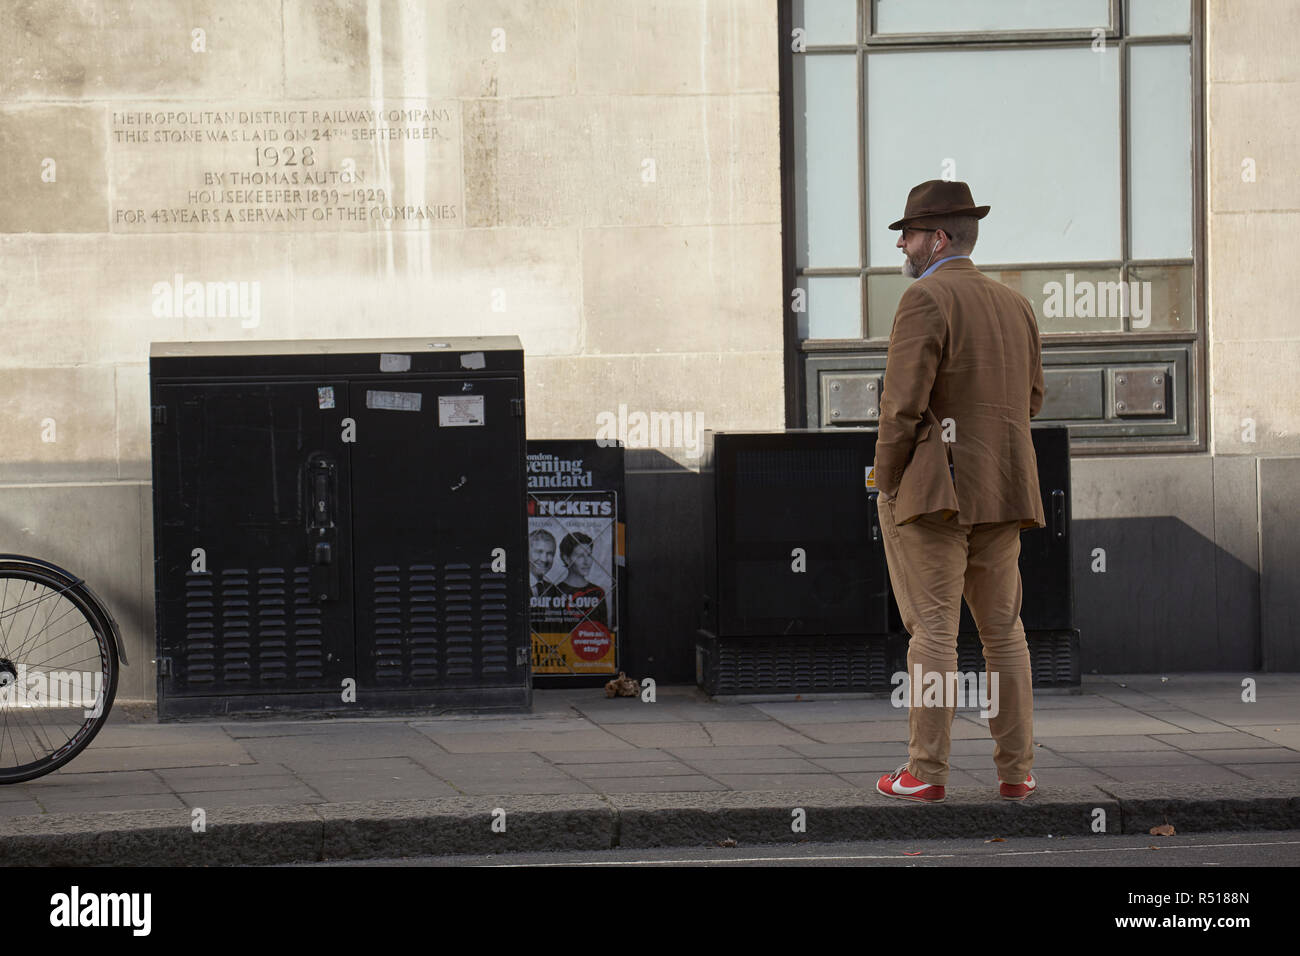 Uomo in attesa a St. James Park Station con una placca del Metropolita azienda ferroviaria sulla parete. Foto Stock